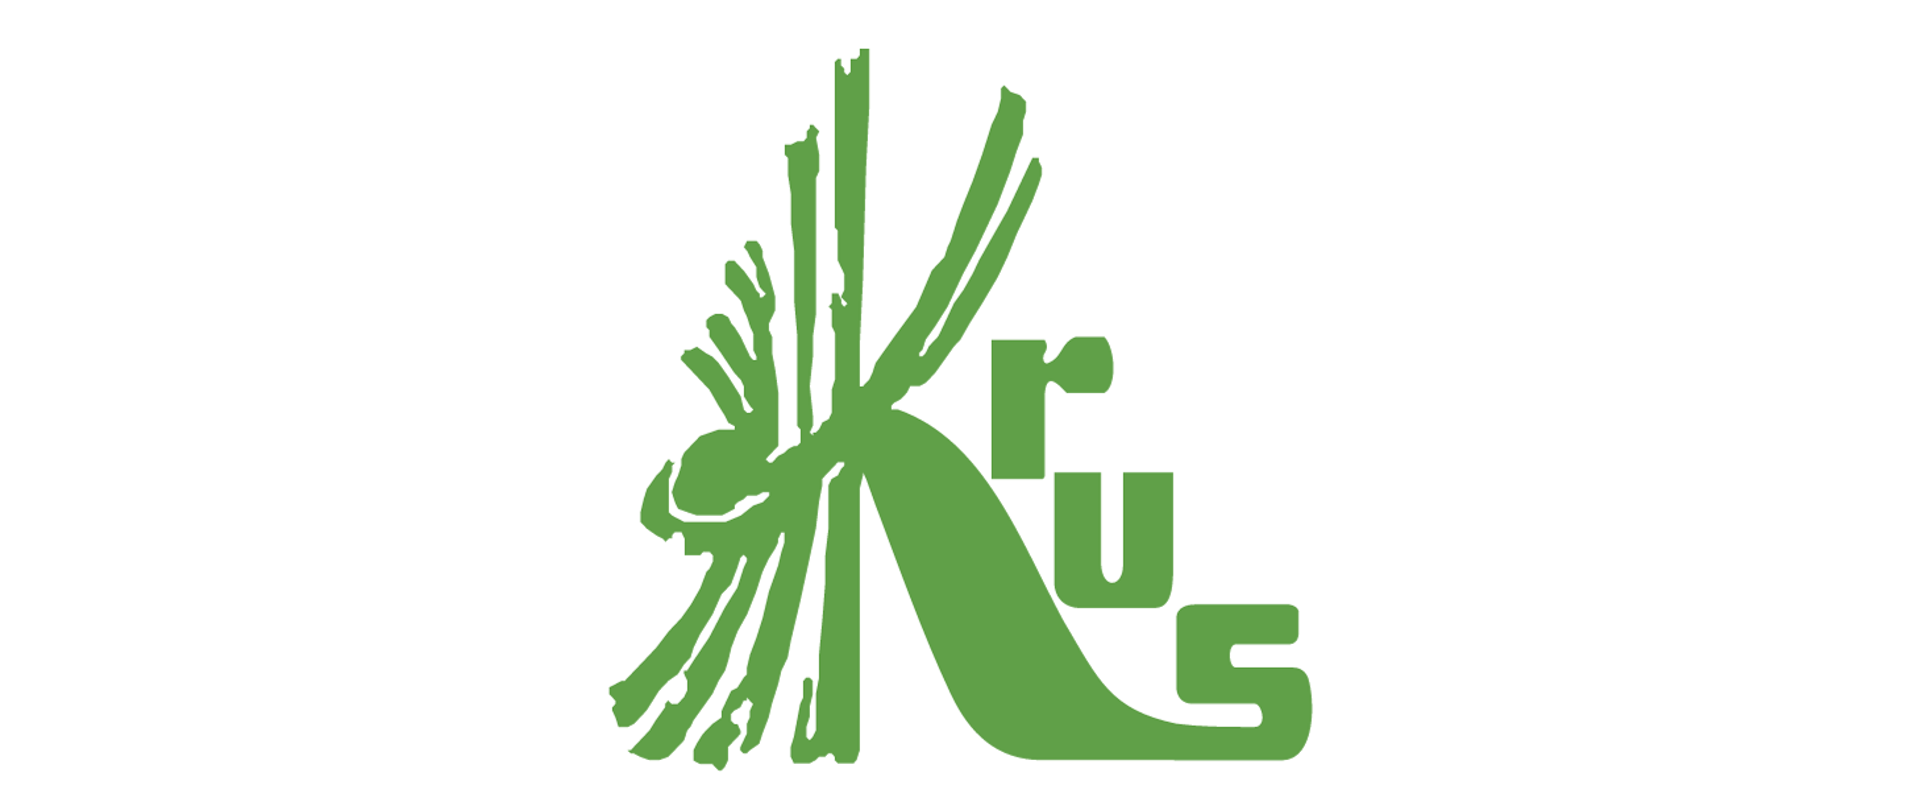 logo KRUS na białym tle - duża litera K i małe literki r, u, s